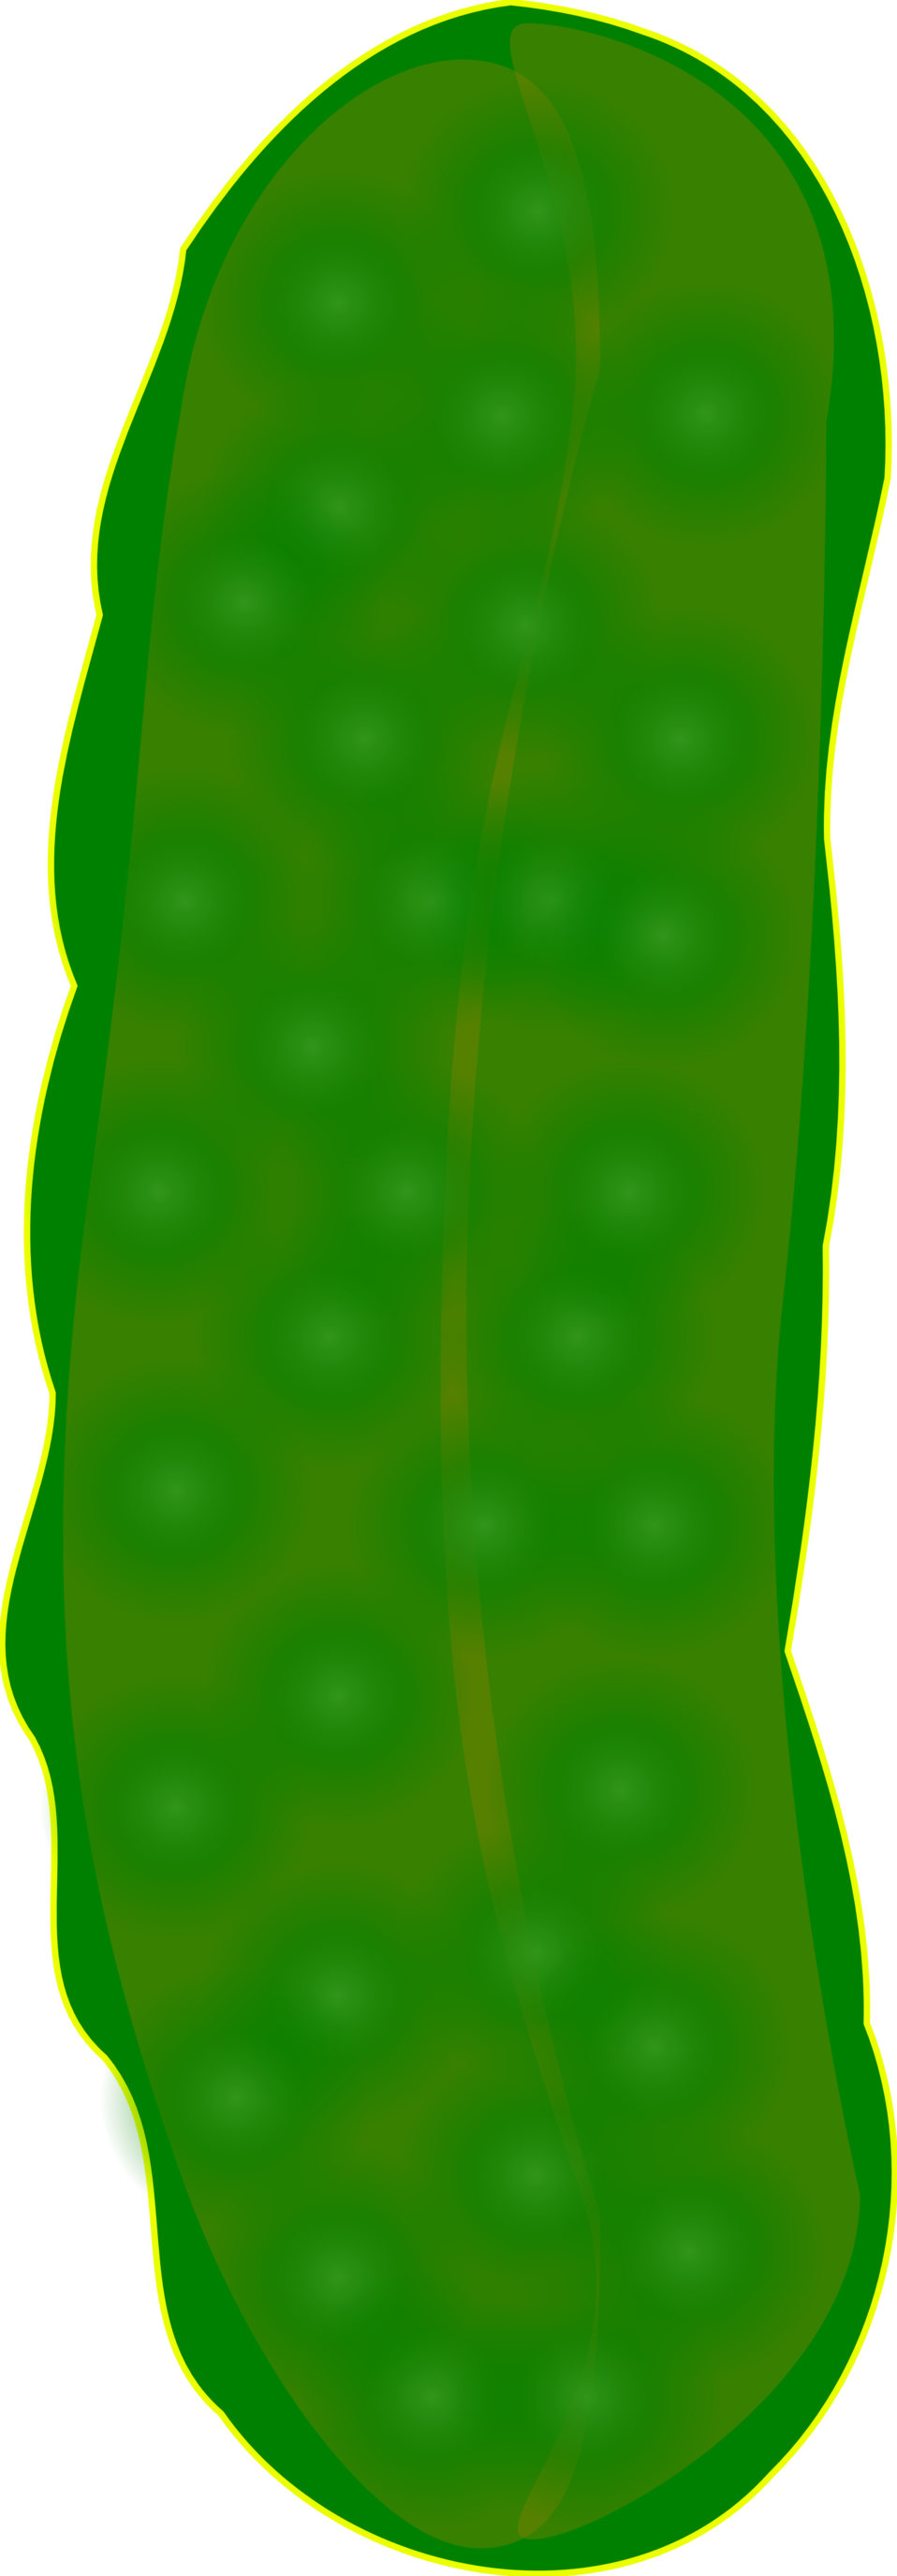 Cucumber clipart pickle. Public domain clip art